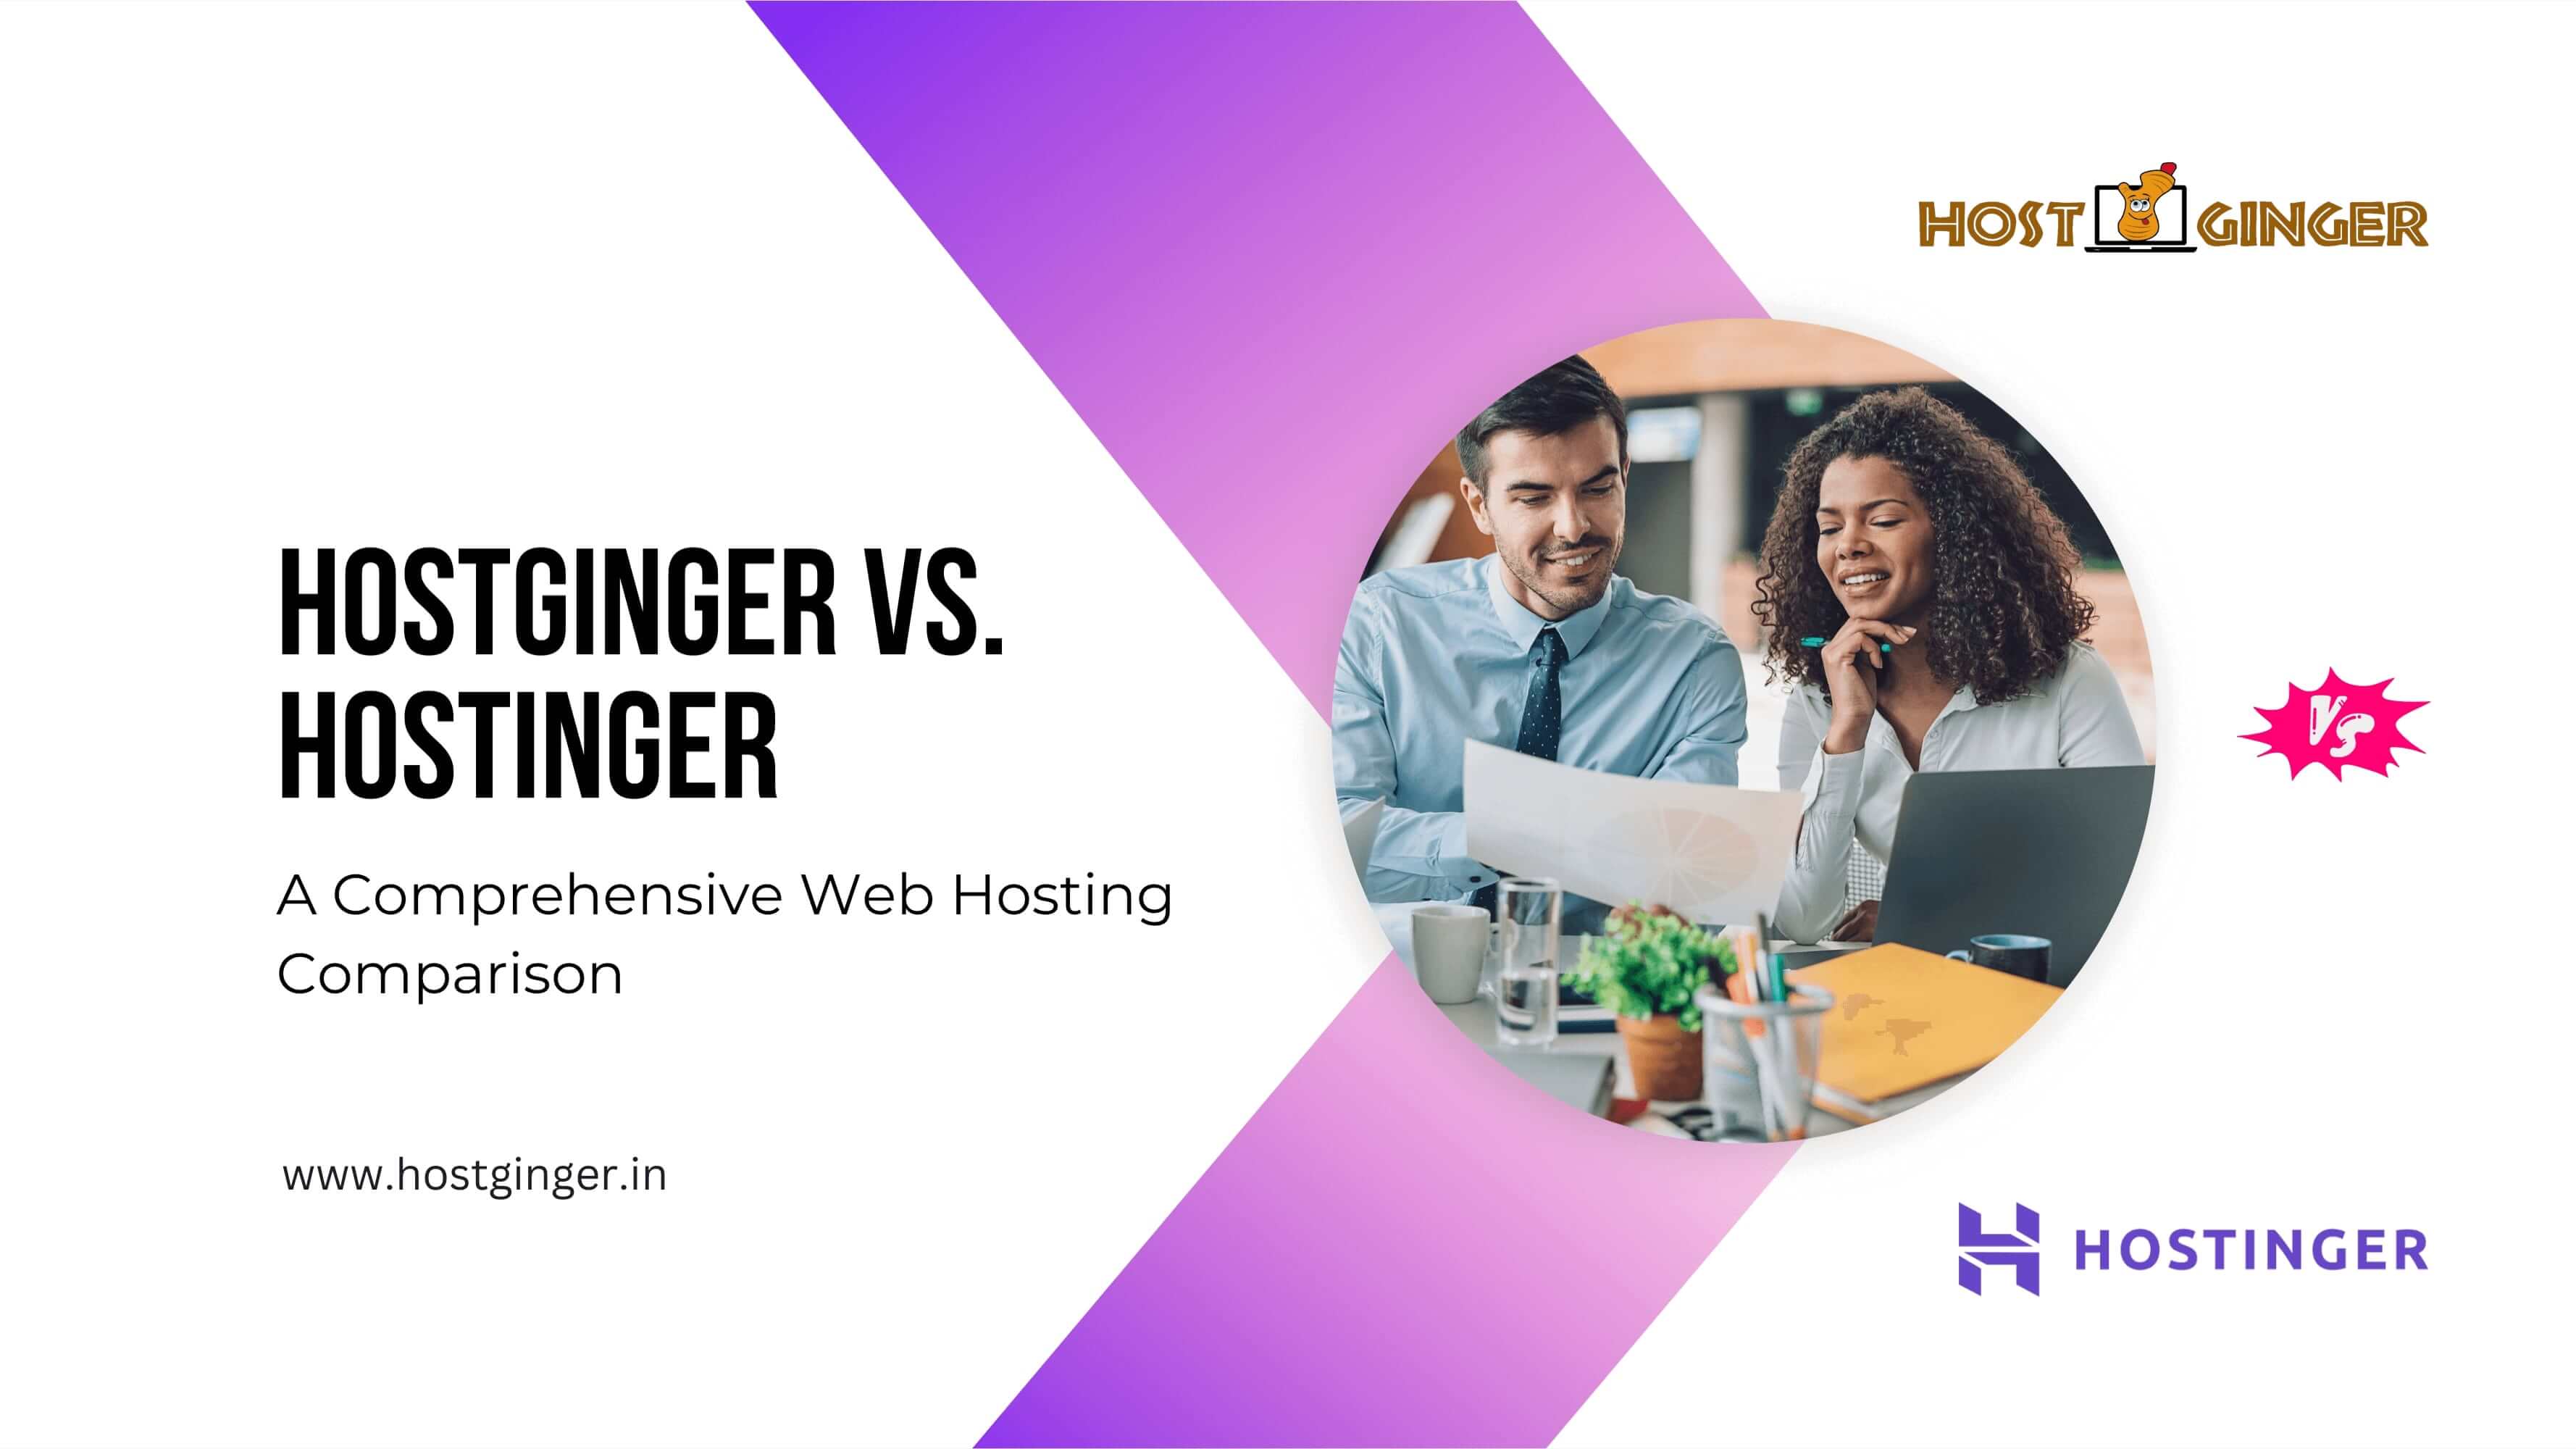 Hostginger vs. Hostinger